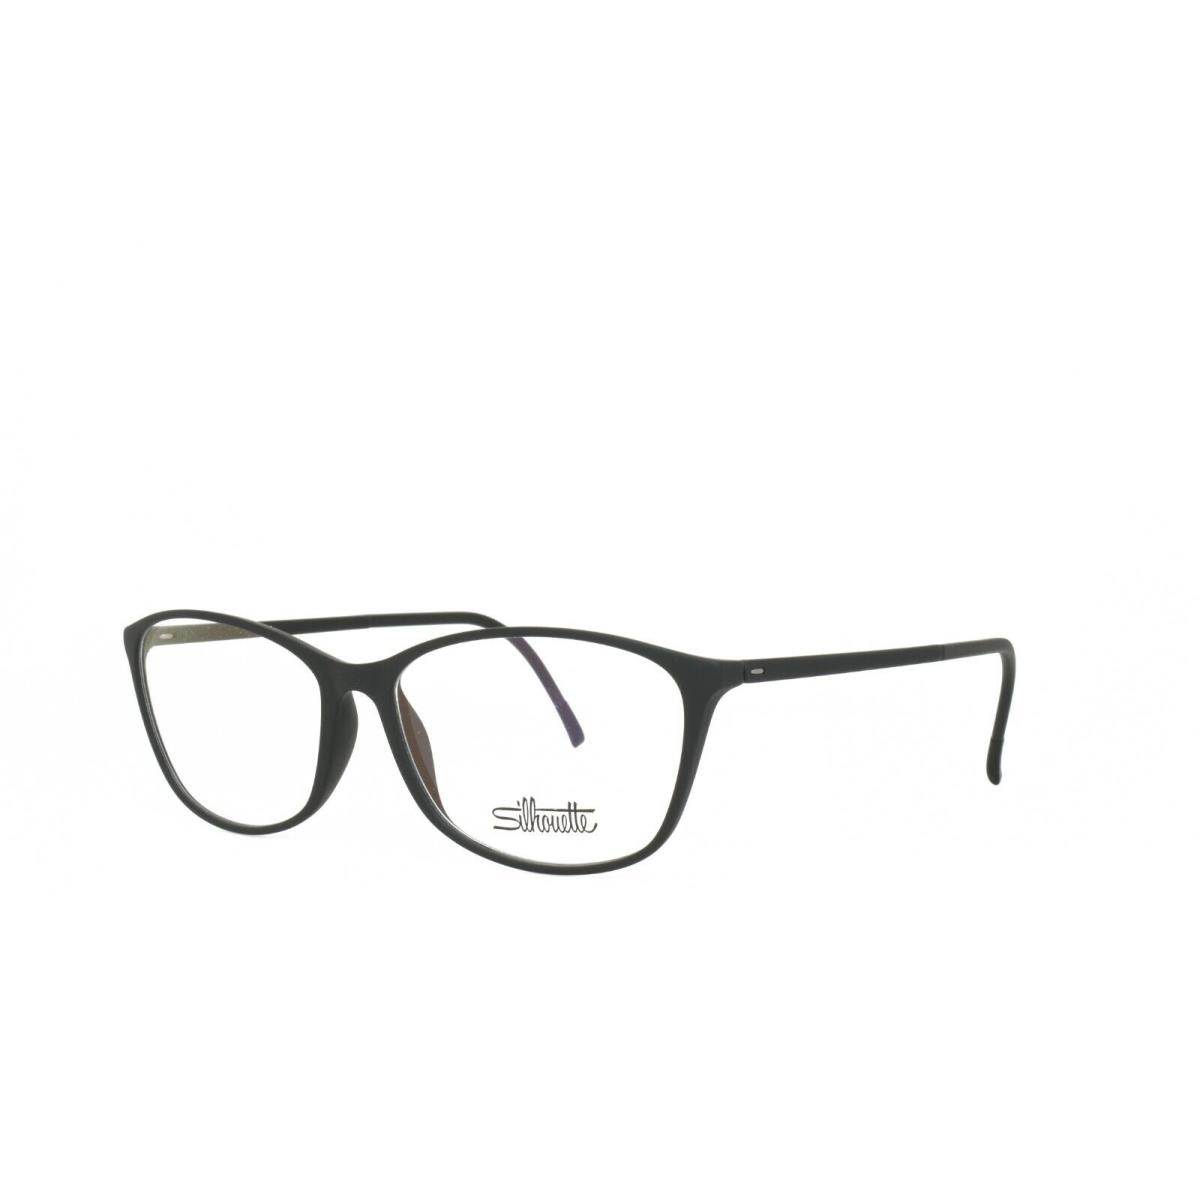 Silhouette Spx Illusion 1563 10 6100 Eyeglasses Frame 55-15-135 Black - Frame: Black